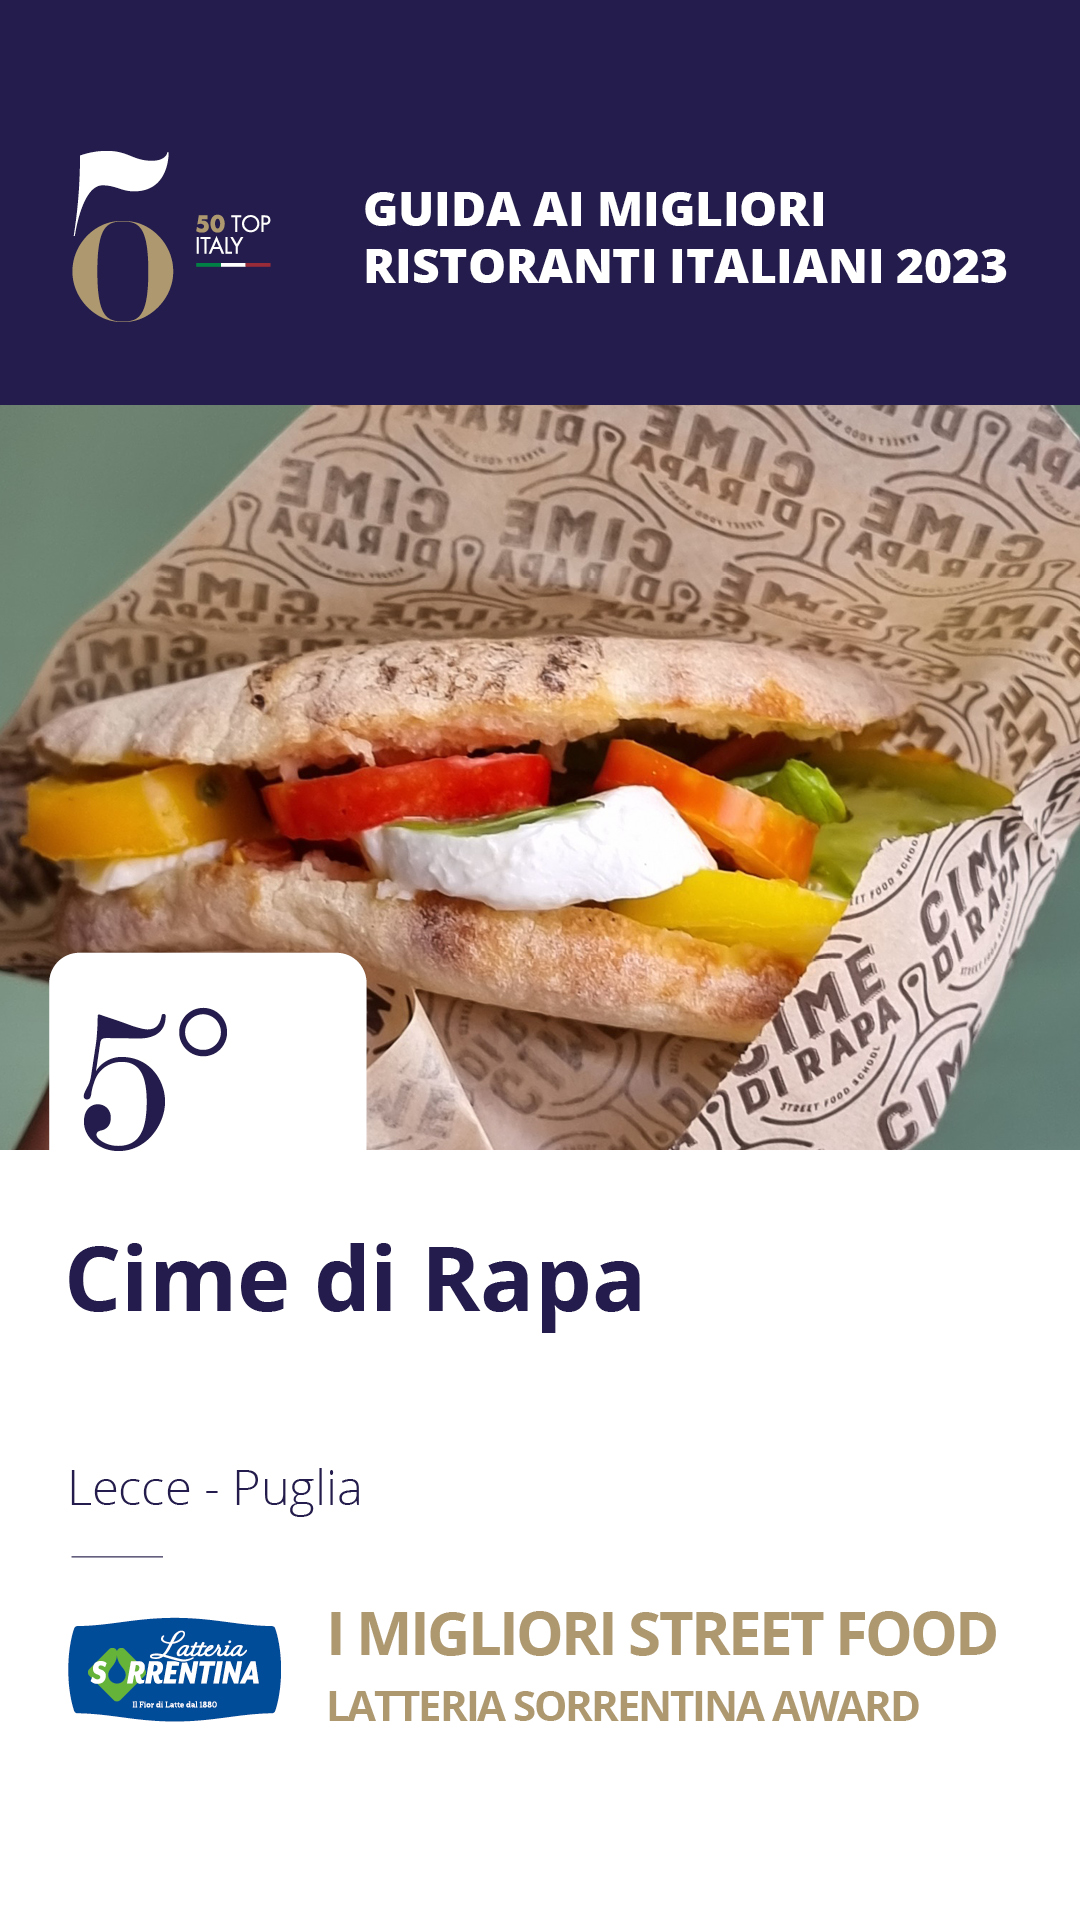 5 - Cime di Rapa – Lecce, Puglia